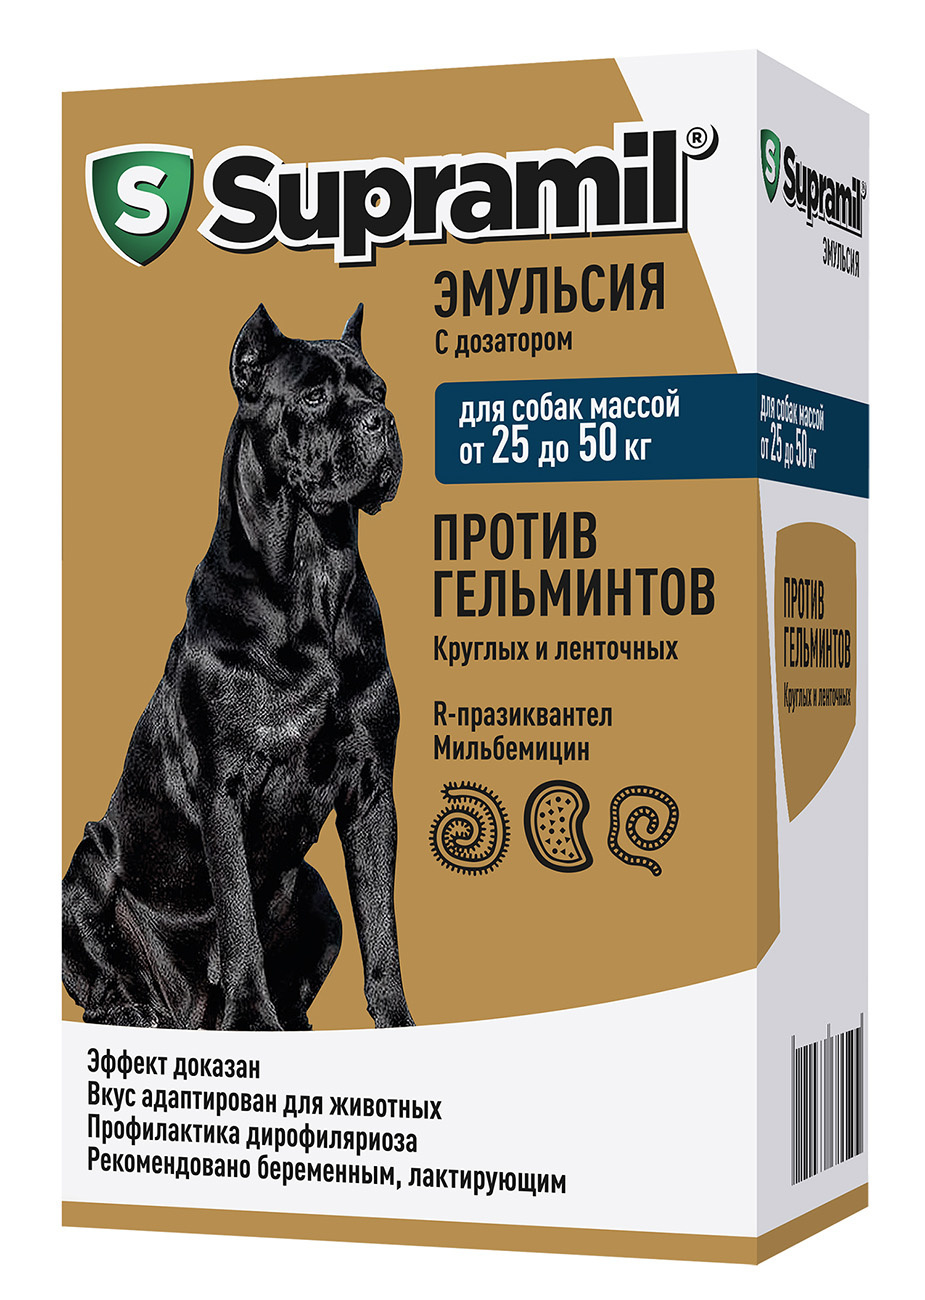 Астрафарм Астрафарм супрамил эмульсия для собак массой от 25 до 50 кг (77 г) антигельминтик для собак супрамил массой 25 50кг эмульсия